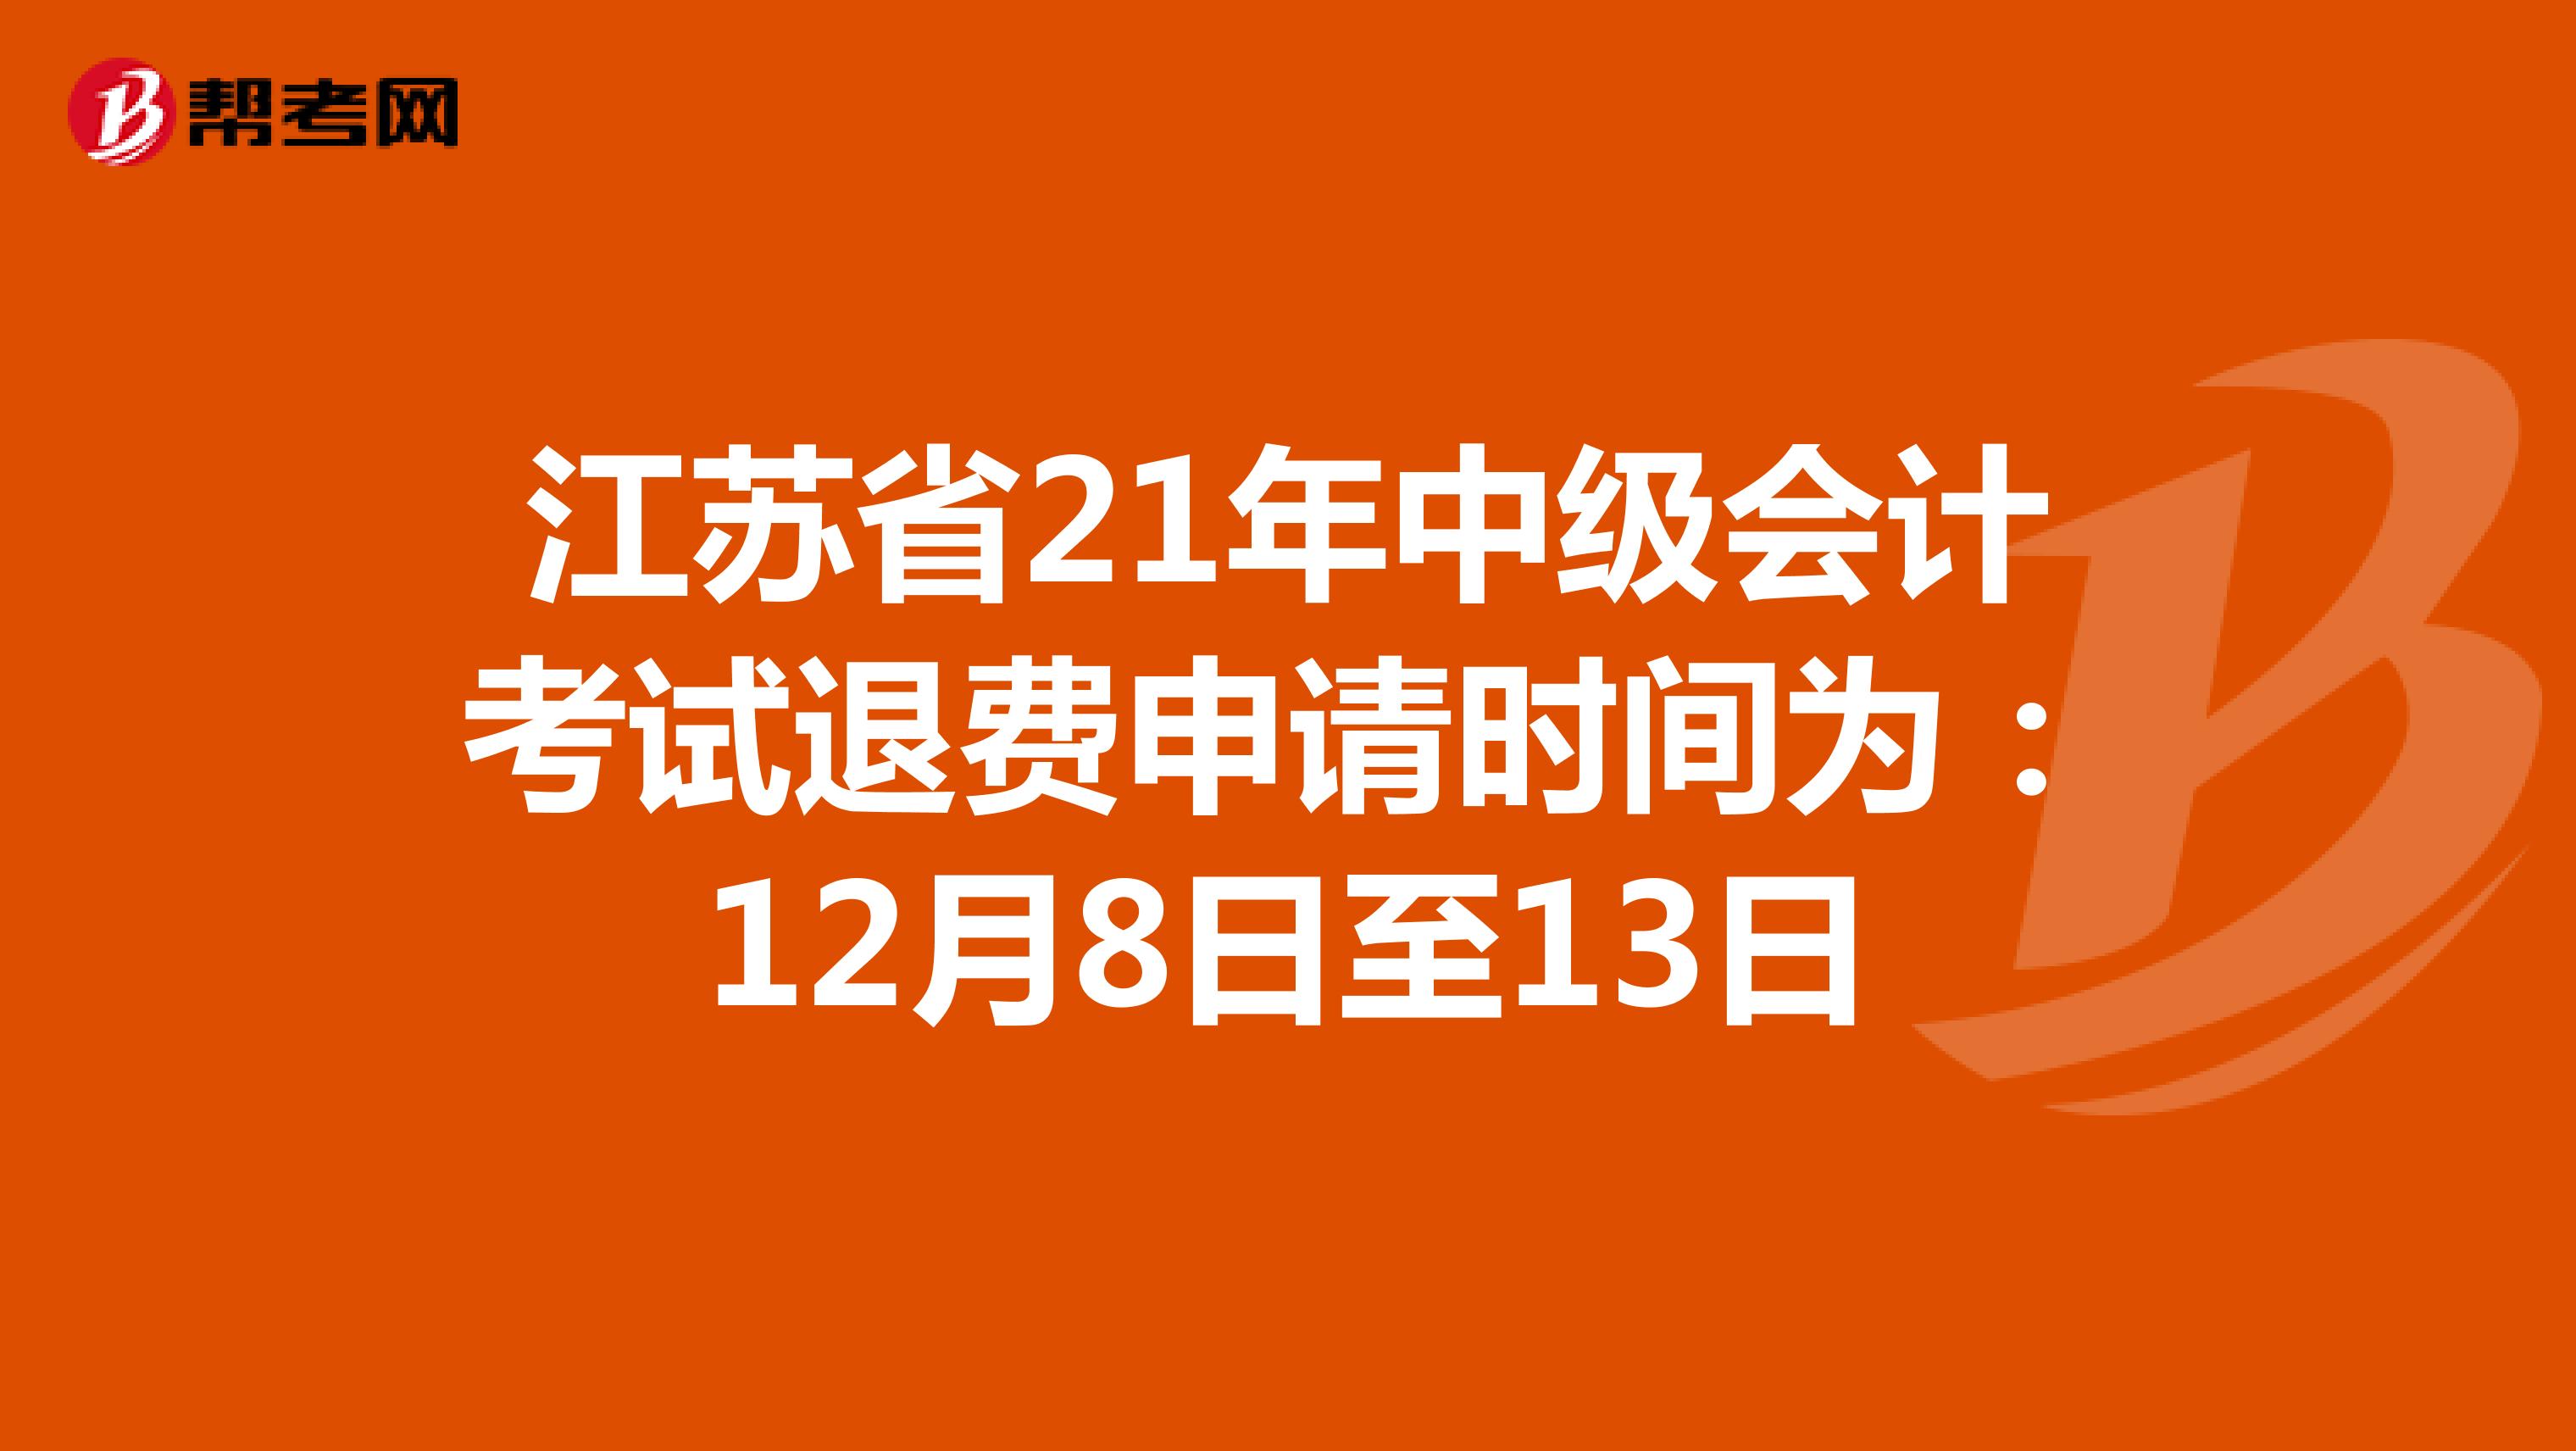 江苏省21年中级会计考试退费申请时间为：12月8日至13日